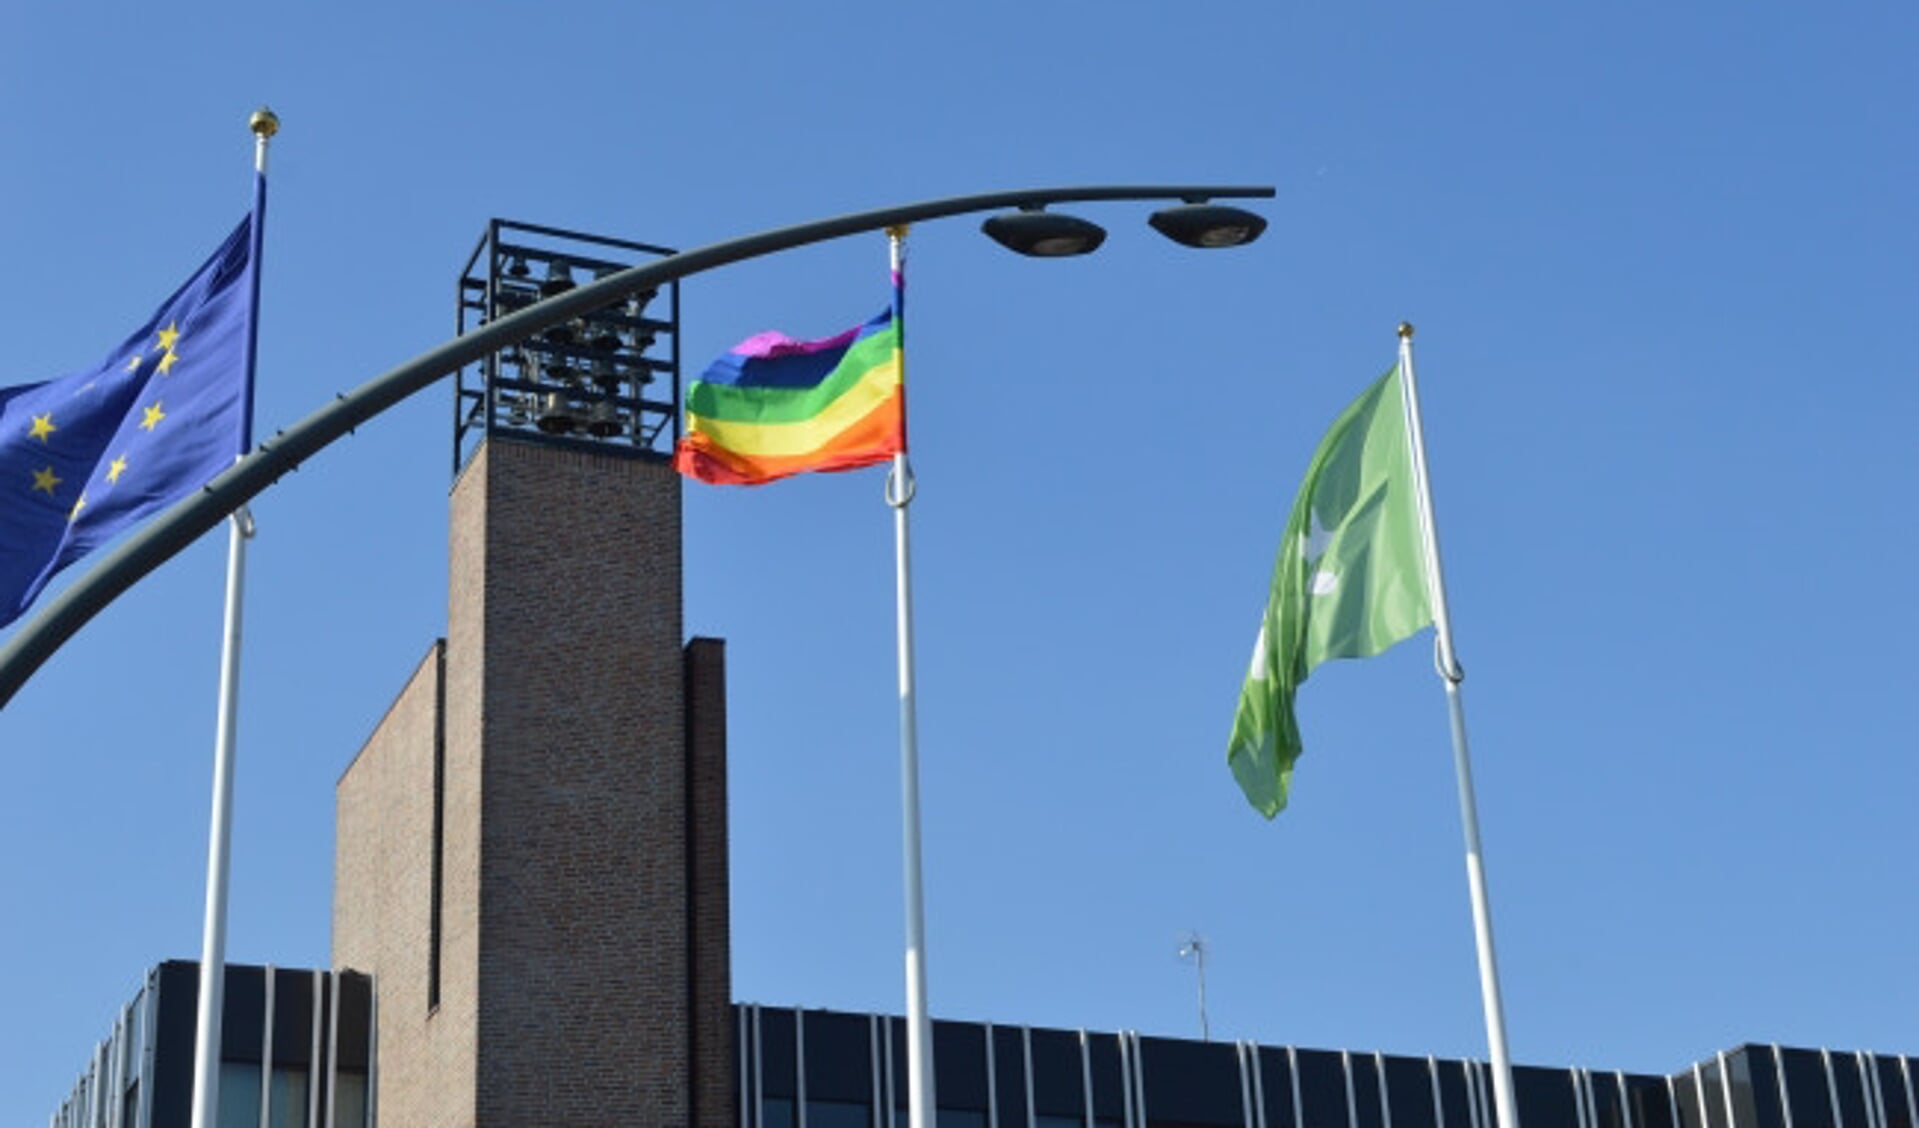  De regenboogvlag bij het gemeentehuis.